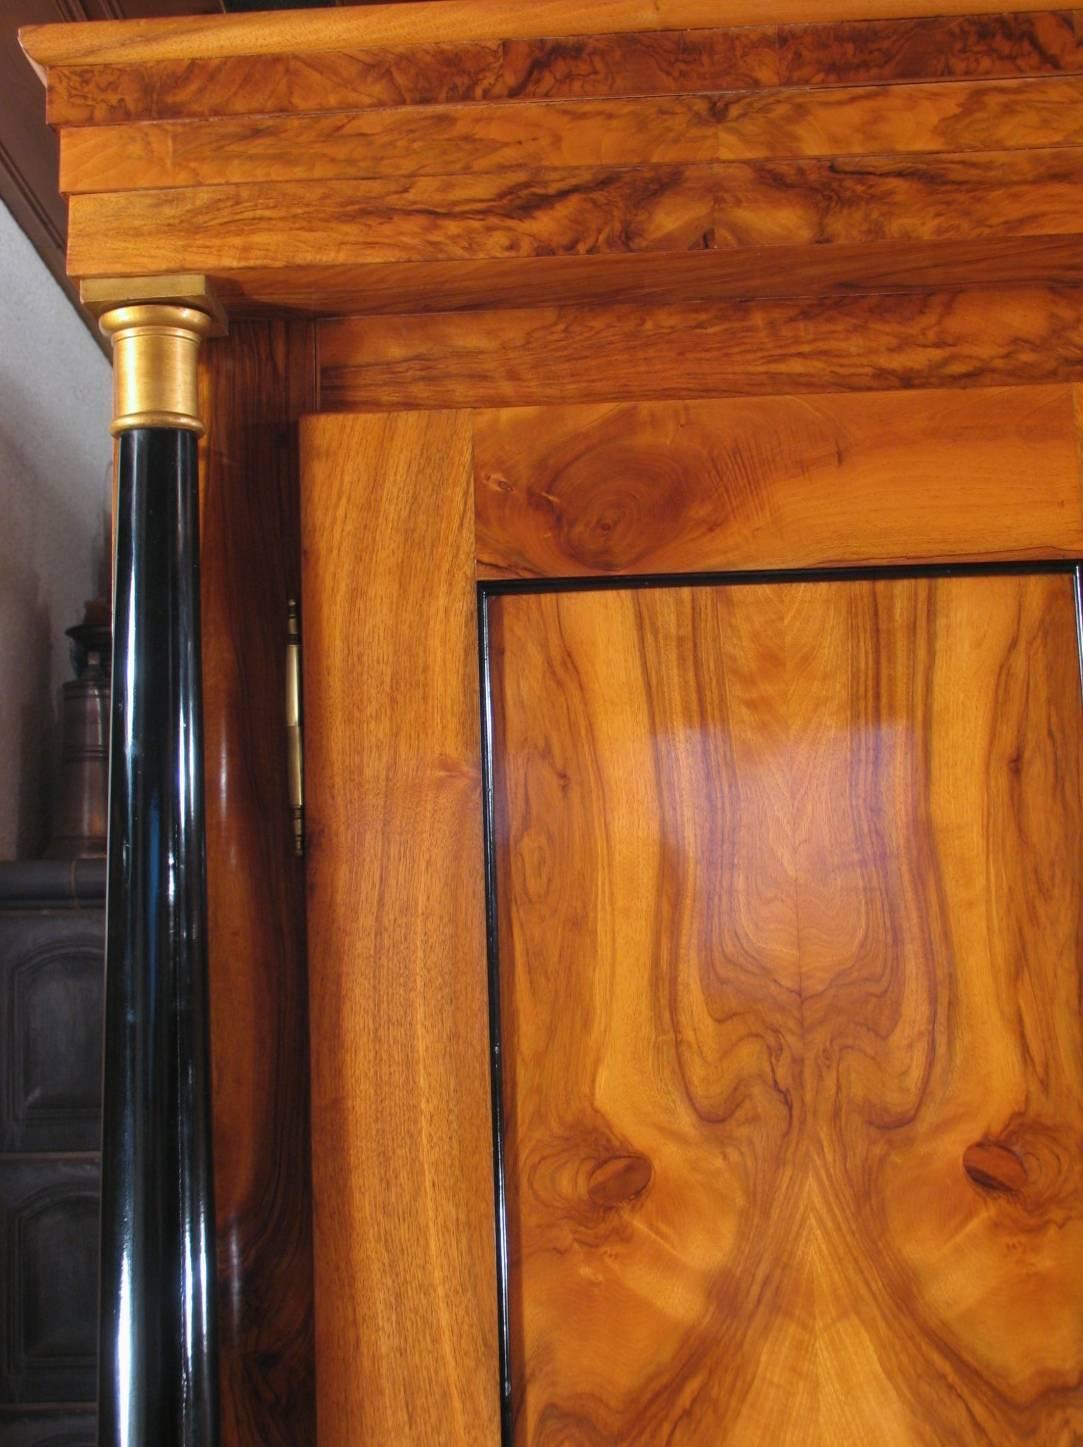 Klassisches Beispiel eines originalen Biedermeierschranks aus der Frühphase des Biedermeier um 1820.
Der Schrank zeichnet sich durch sein schönes Walnussfurnier an den Seiten und Türen aus. Ebonisierte Säulen mit vergoldeten Holzbasen und Kapitellen